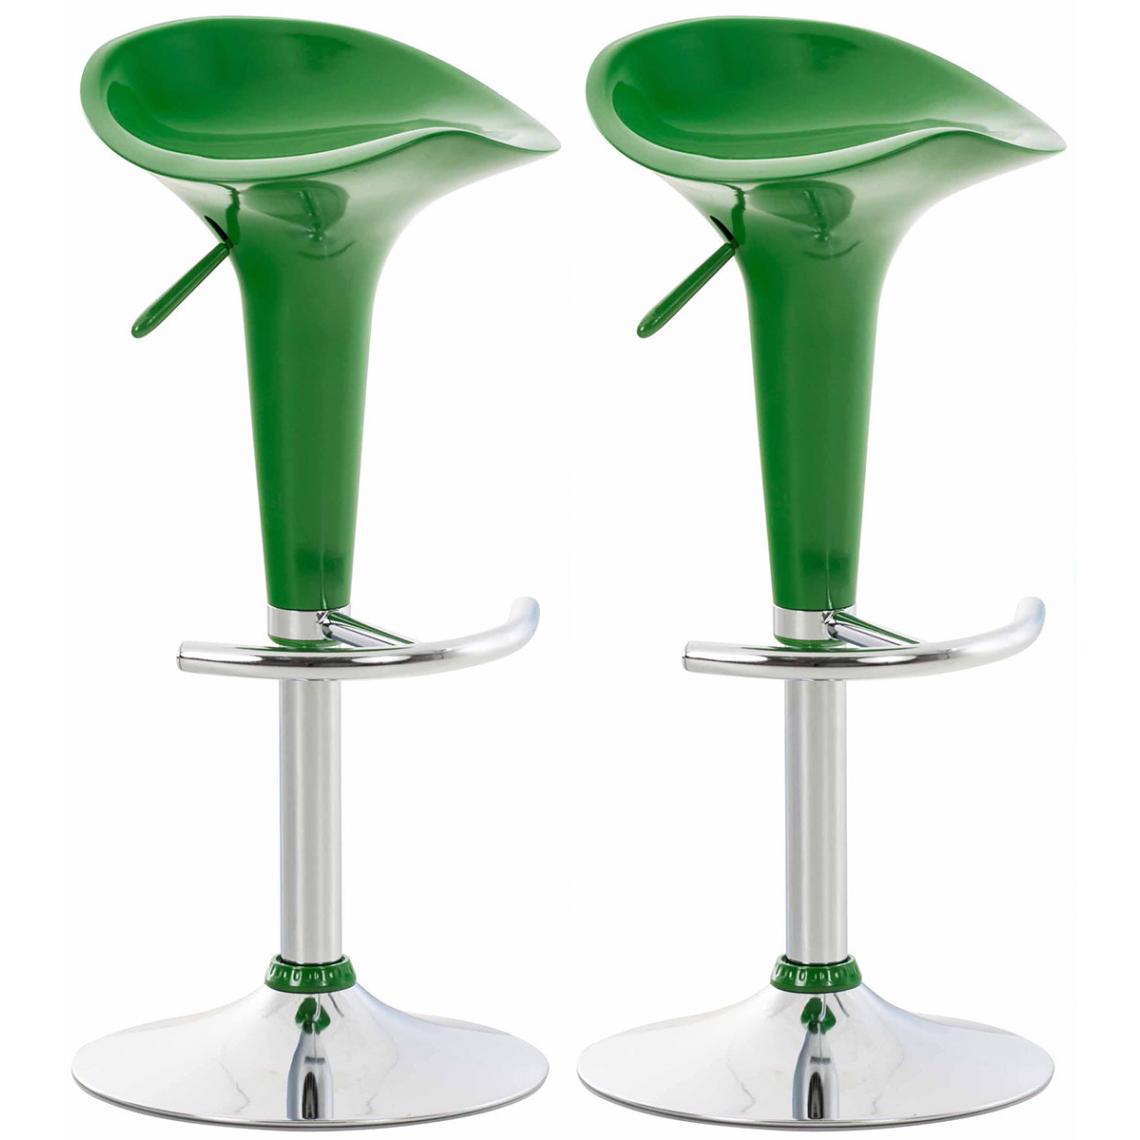 Icaverne - Magnifique Lot de 2 tabourets de bar ligne Vatican couleur vert - Tabourets